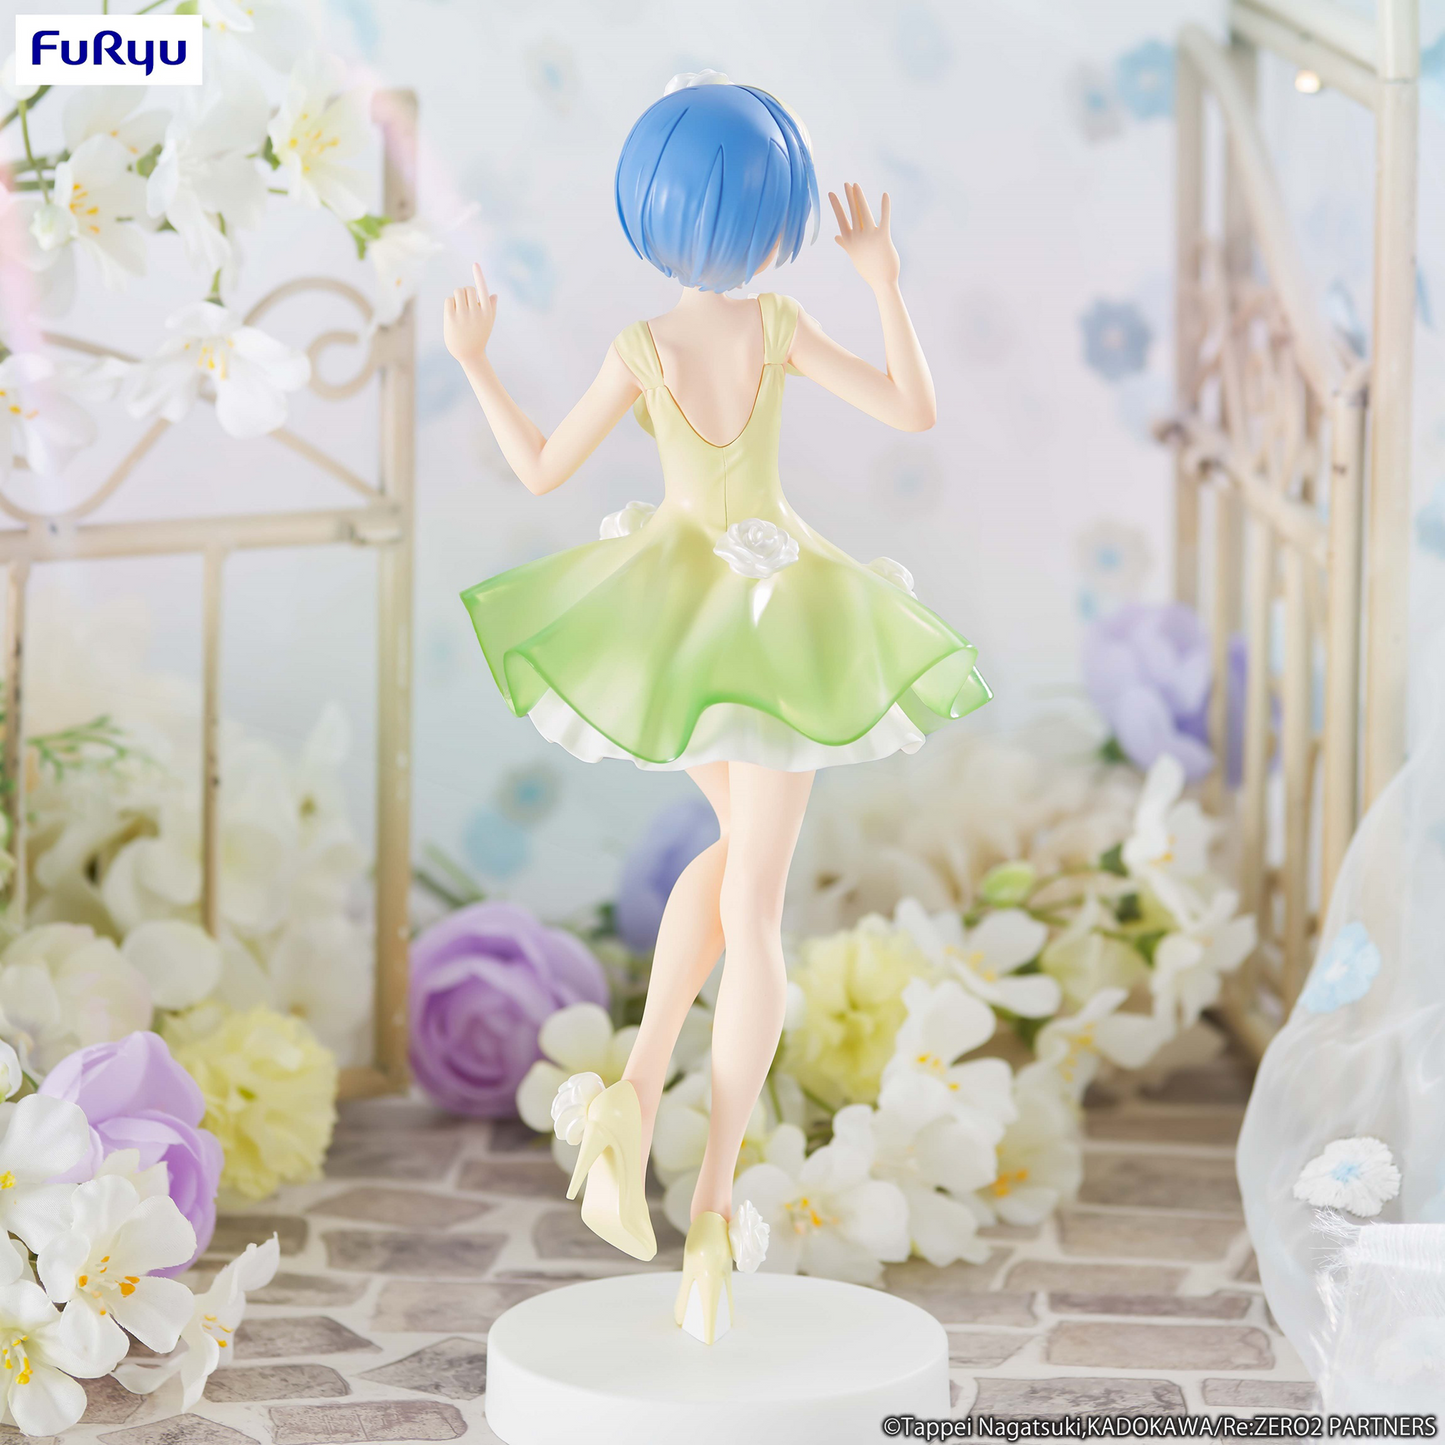 Re:Zero: Rem Flower Dress Trio-Try-It Prize Figure